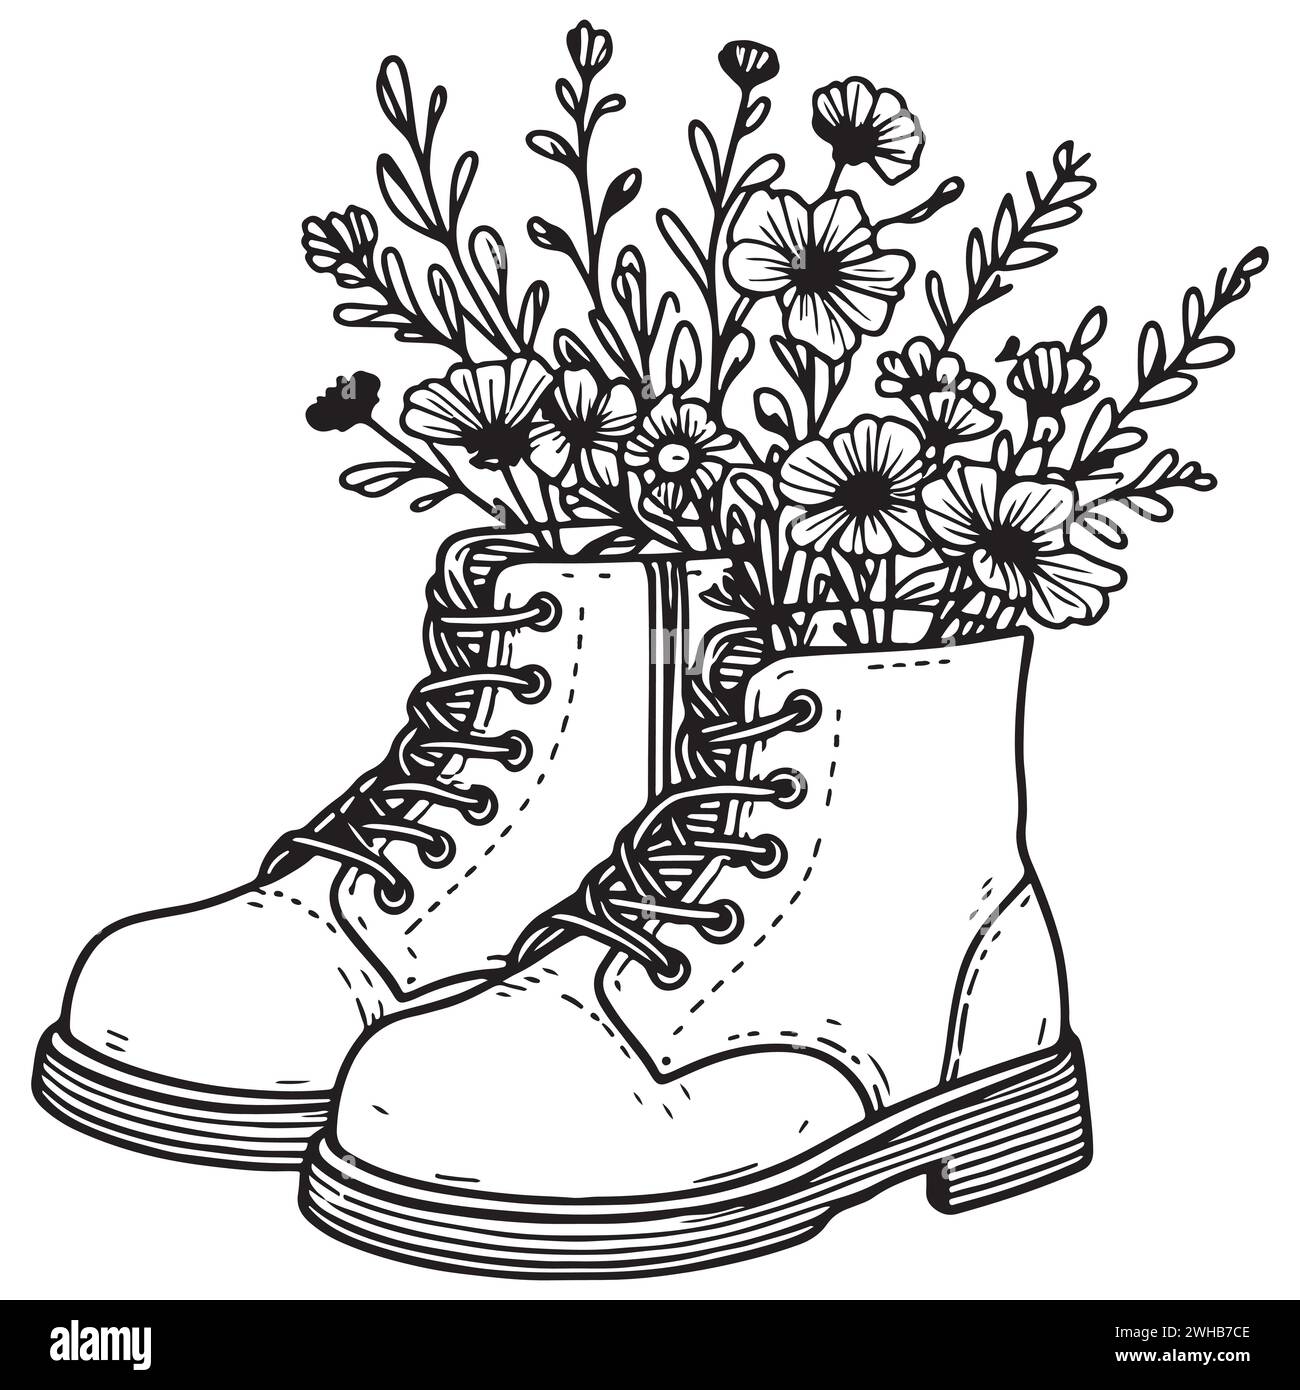 Minimalistische und elegante Illustration mit einem Blumenstrauß in Stiefeln. Linearer Stil und Schwarz-weiß sorgen für einen modernen und anspruchsvollen Look Stock Vektor